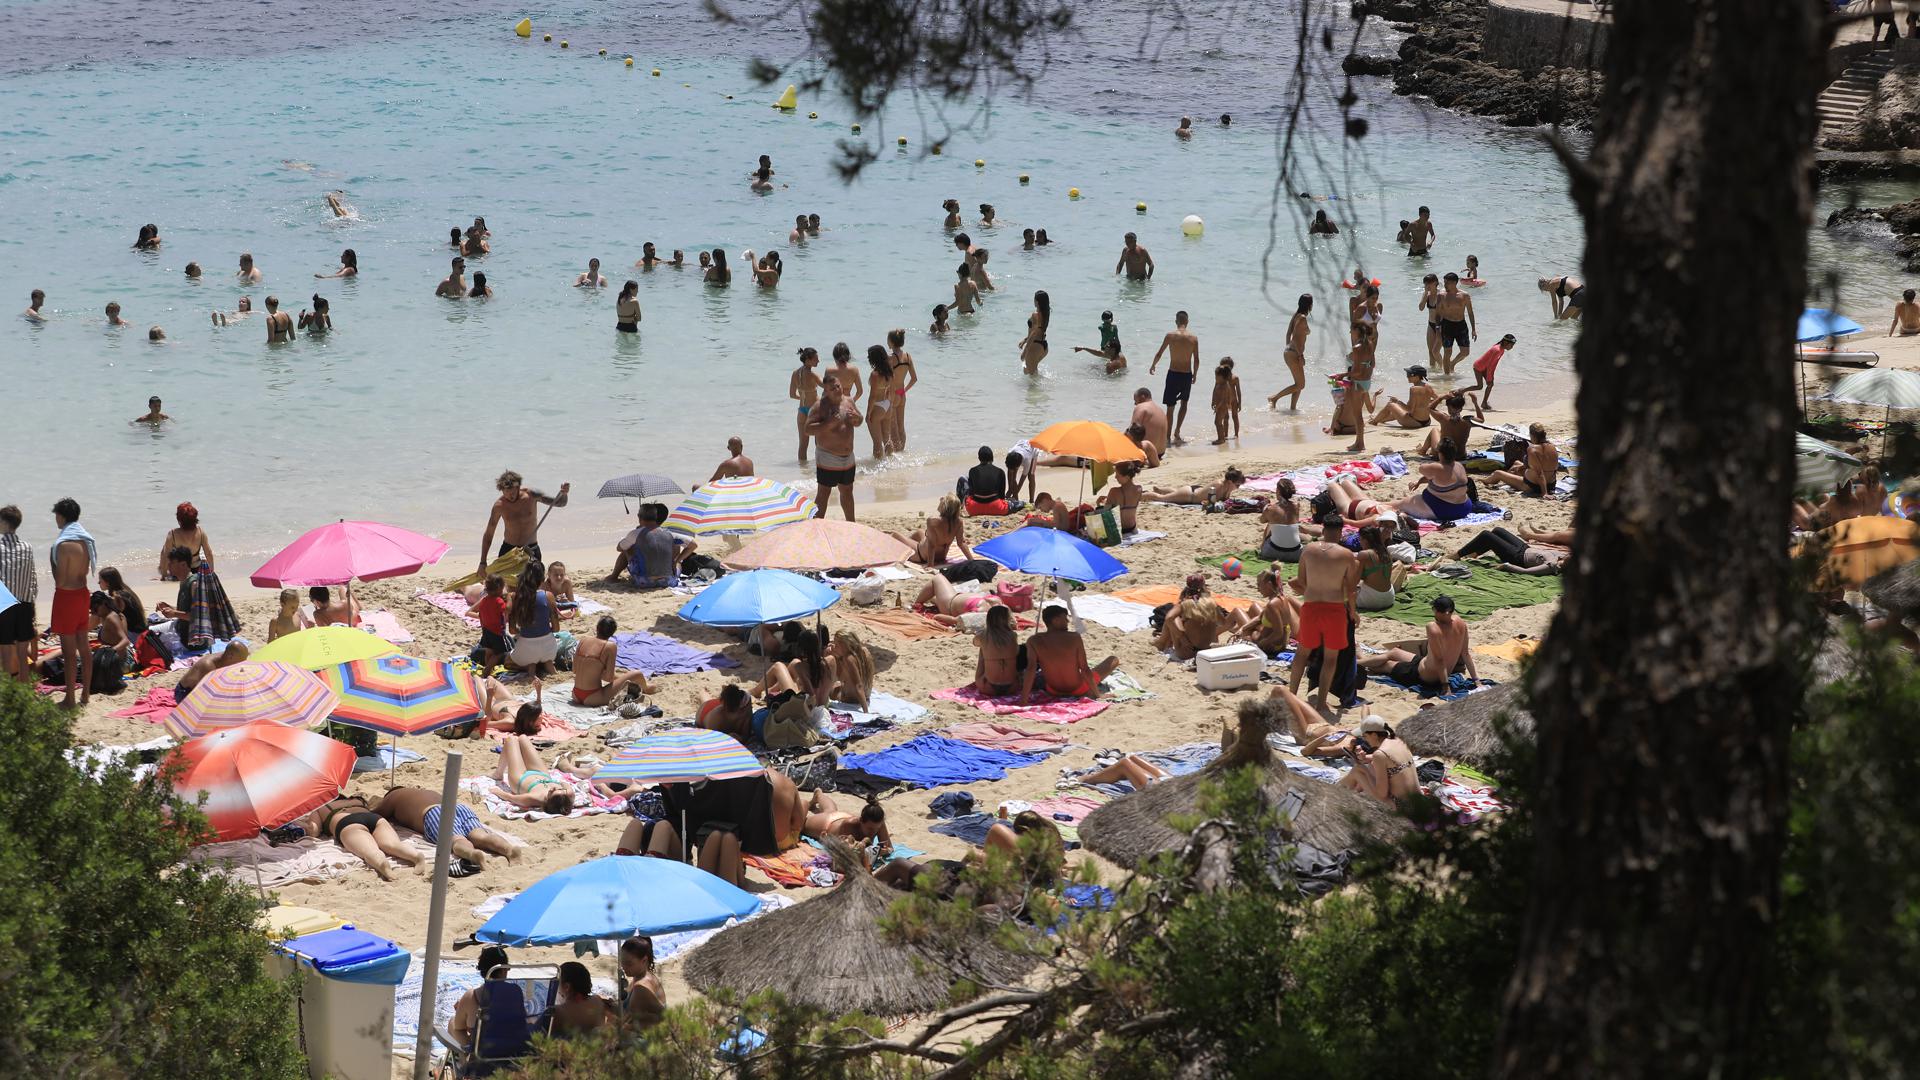 Menschen schwimmen und sonnen sich am Strand von Illetes auf Mallorca. 